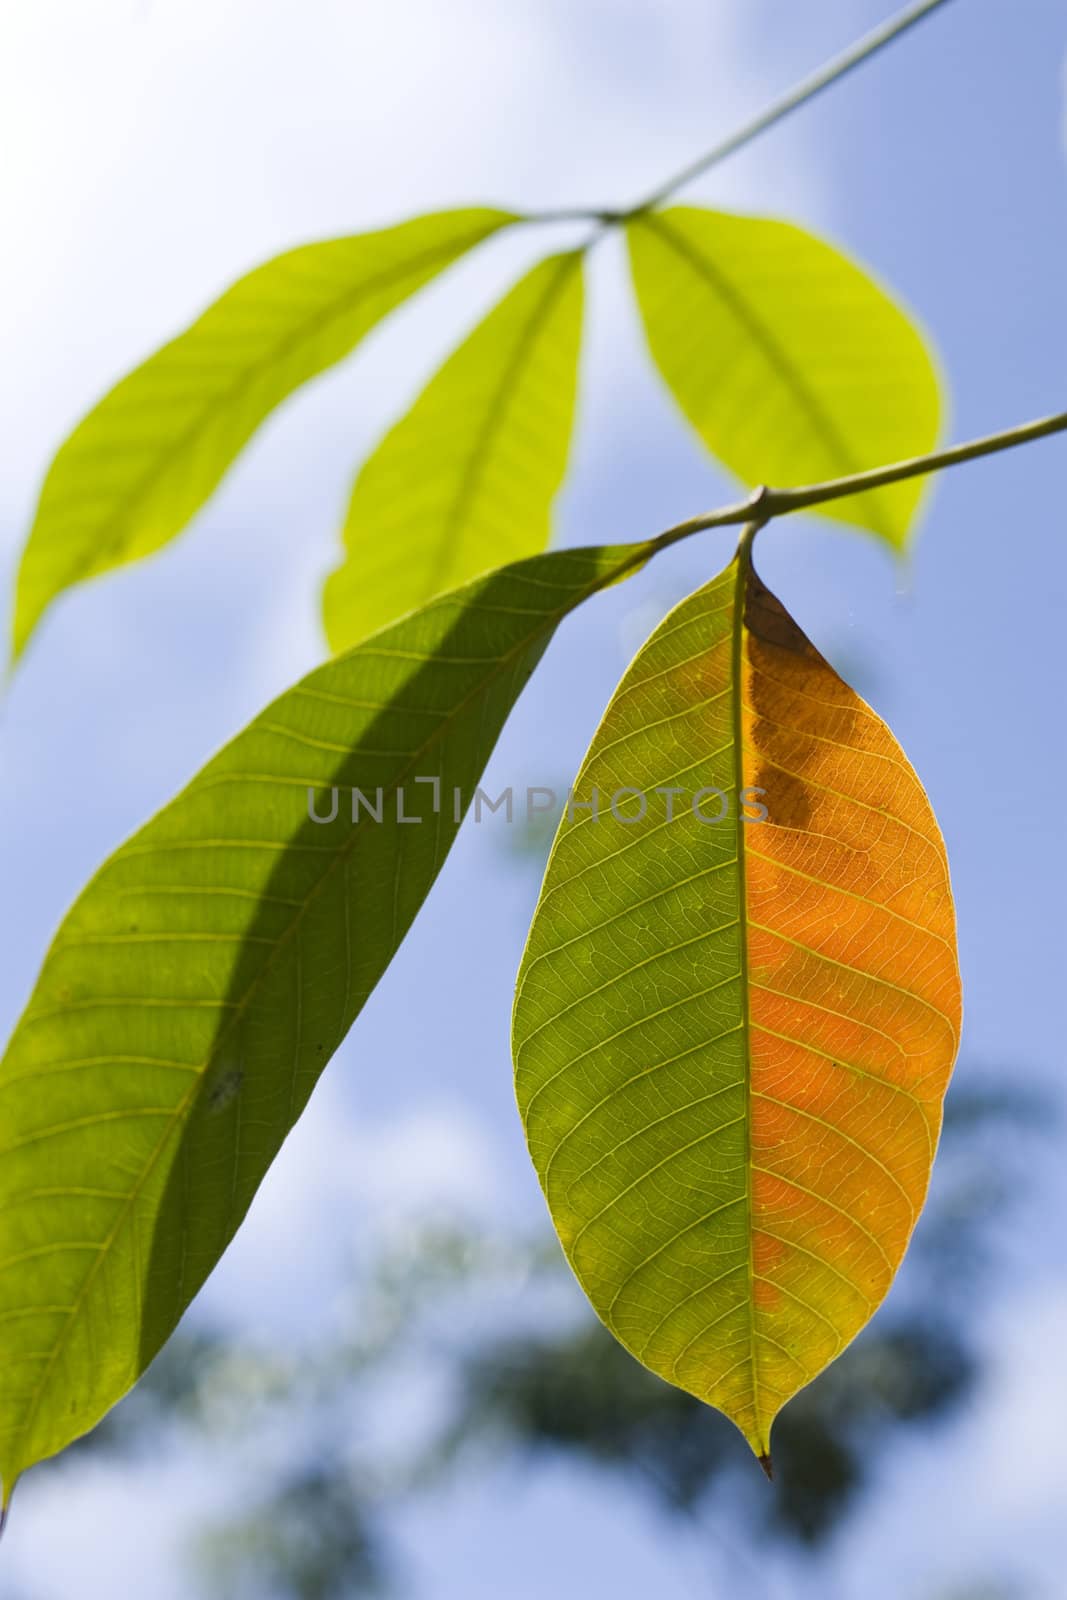 Sunlight on leaves